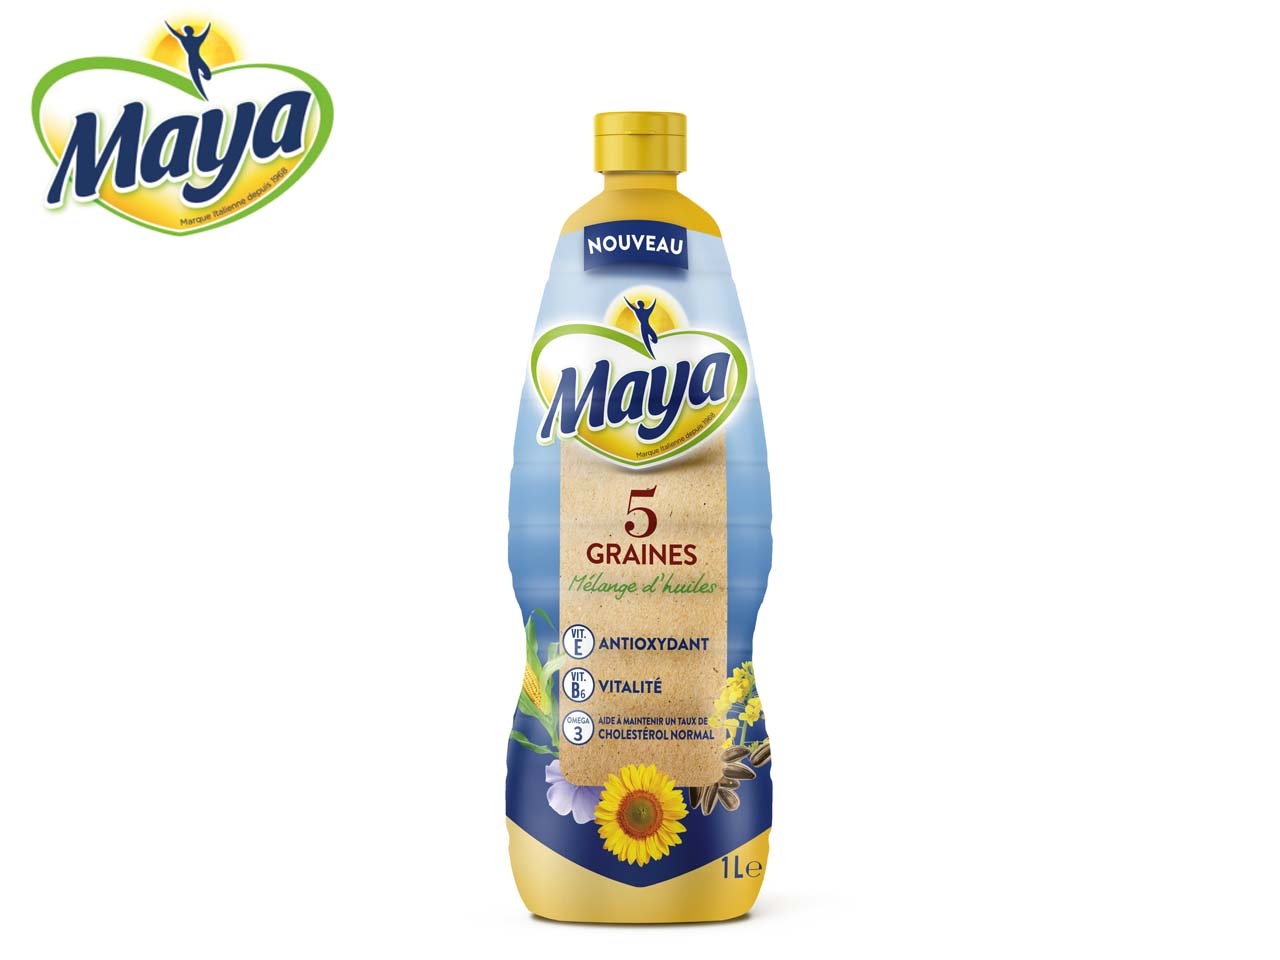 Maya 5 Graines, une nouvelle huile mélangée aux 5 graines